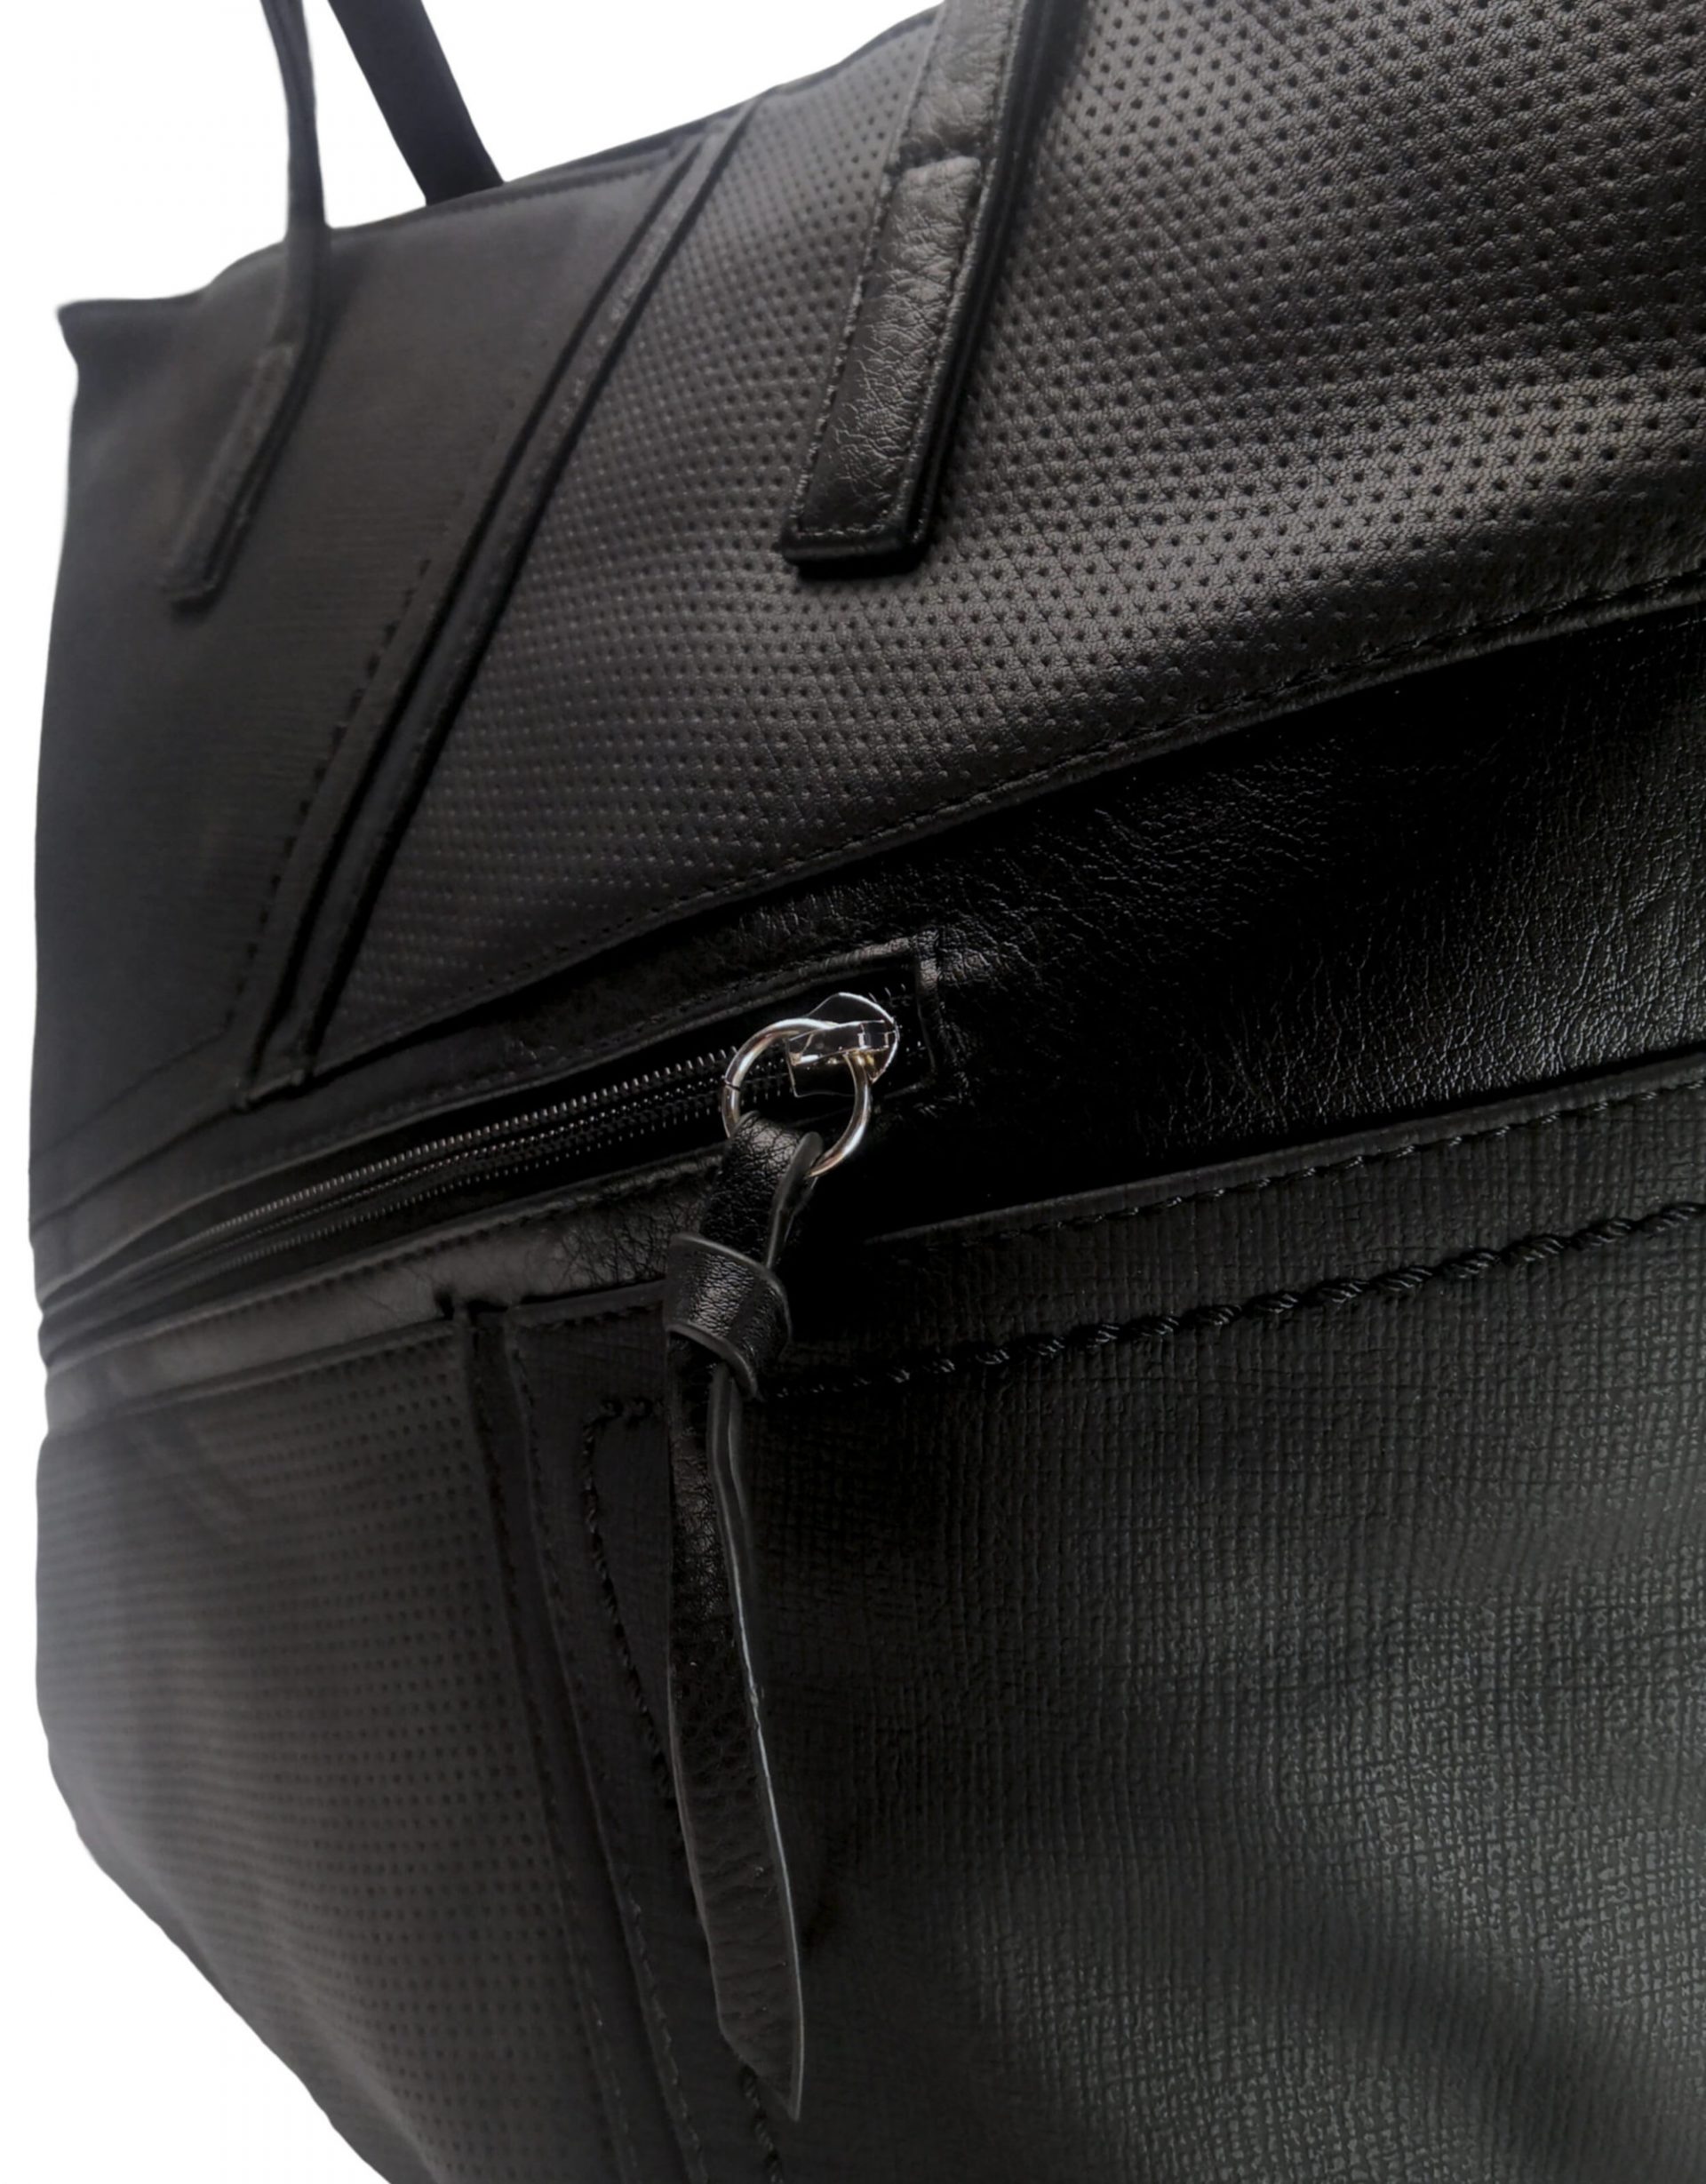 Moderní kabelka přes rameno z jemné eko kůže, Tapple H18067, černá, detail kabelky